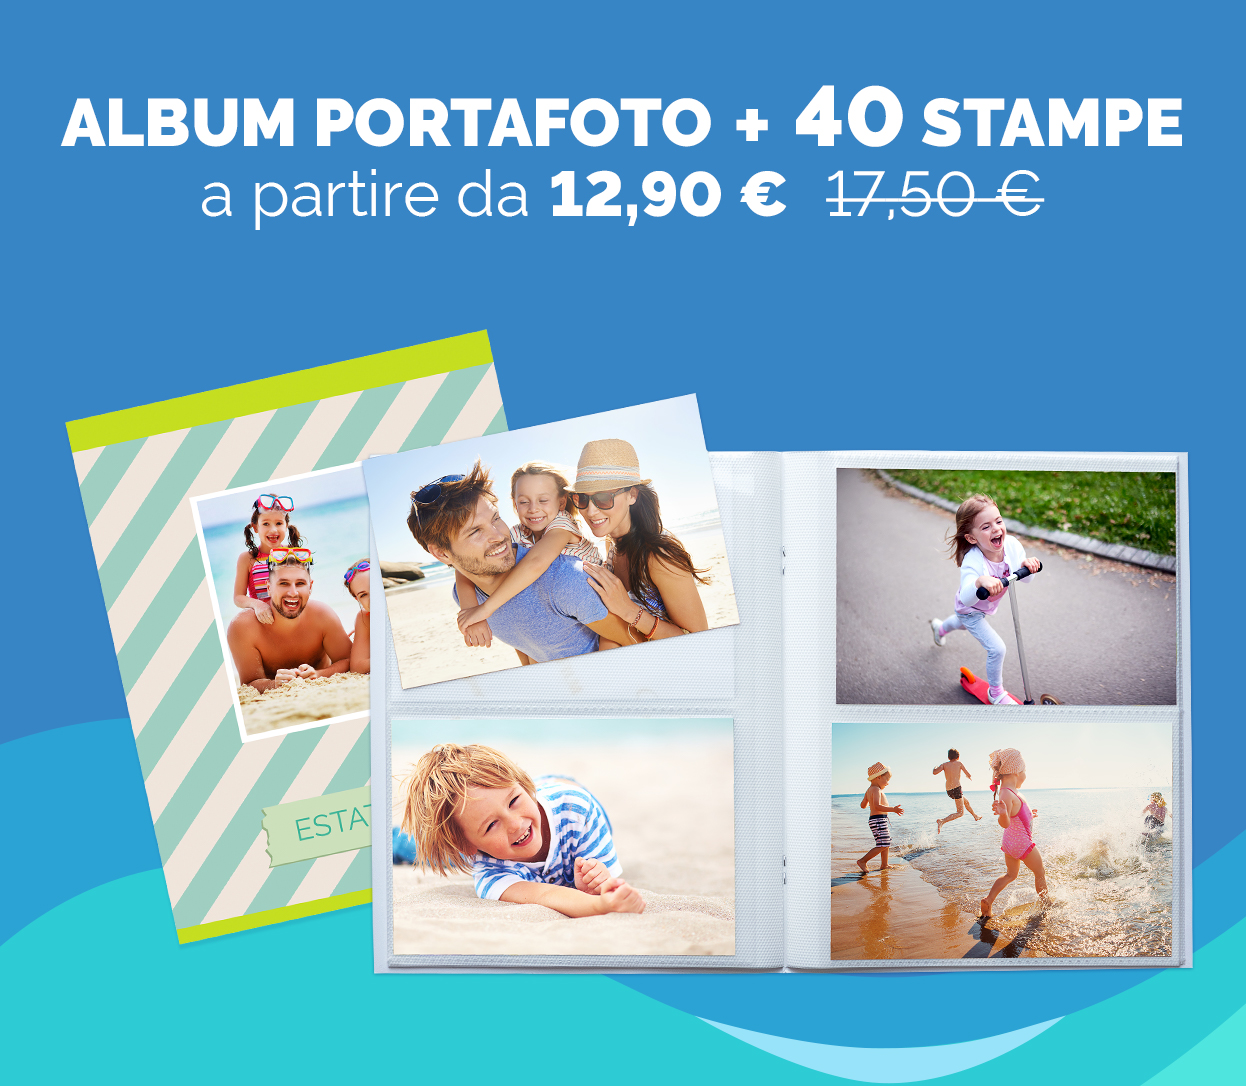 40 Stampe + Album Portafoto personalizzato a partire da 12,90 €